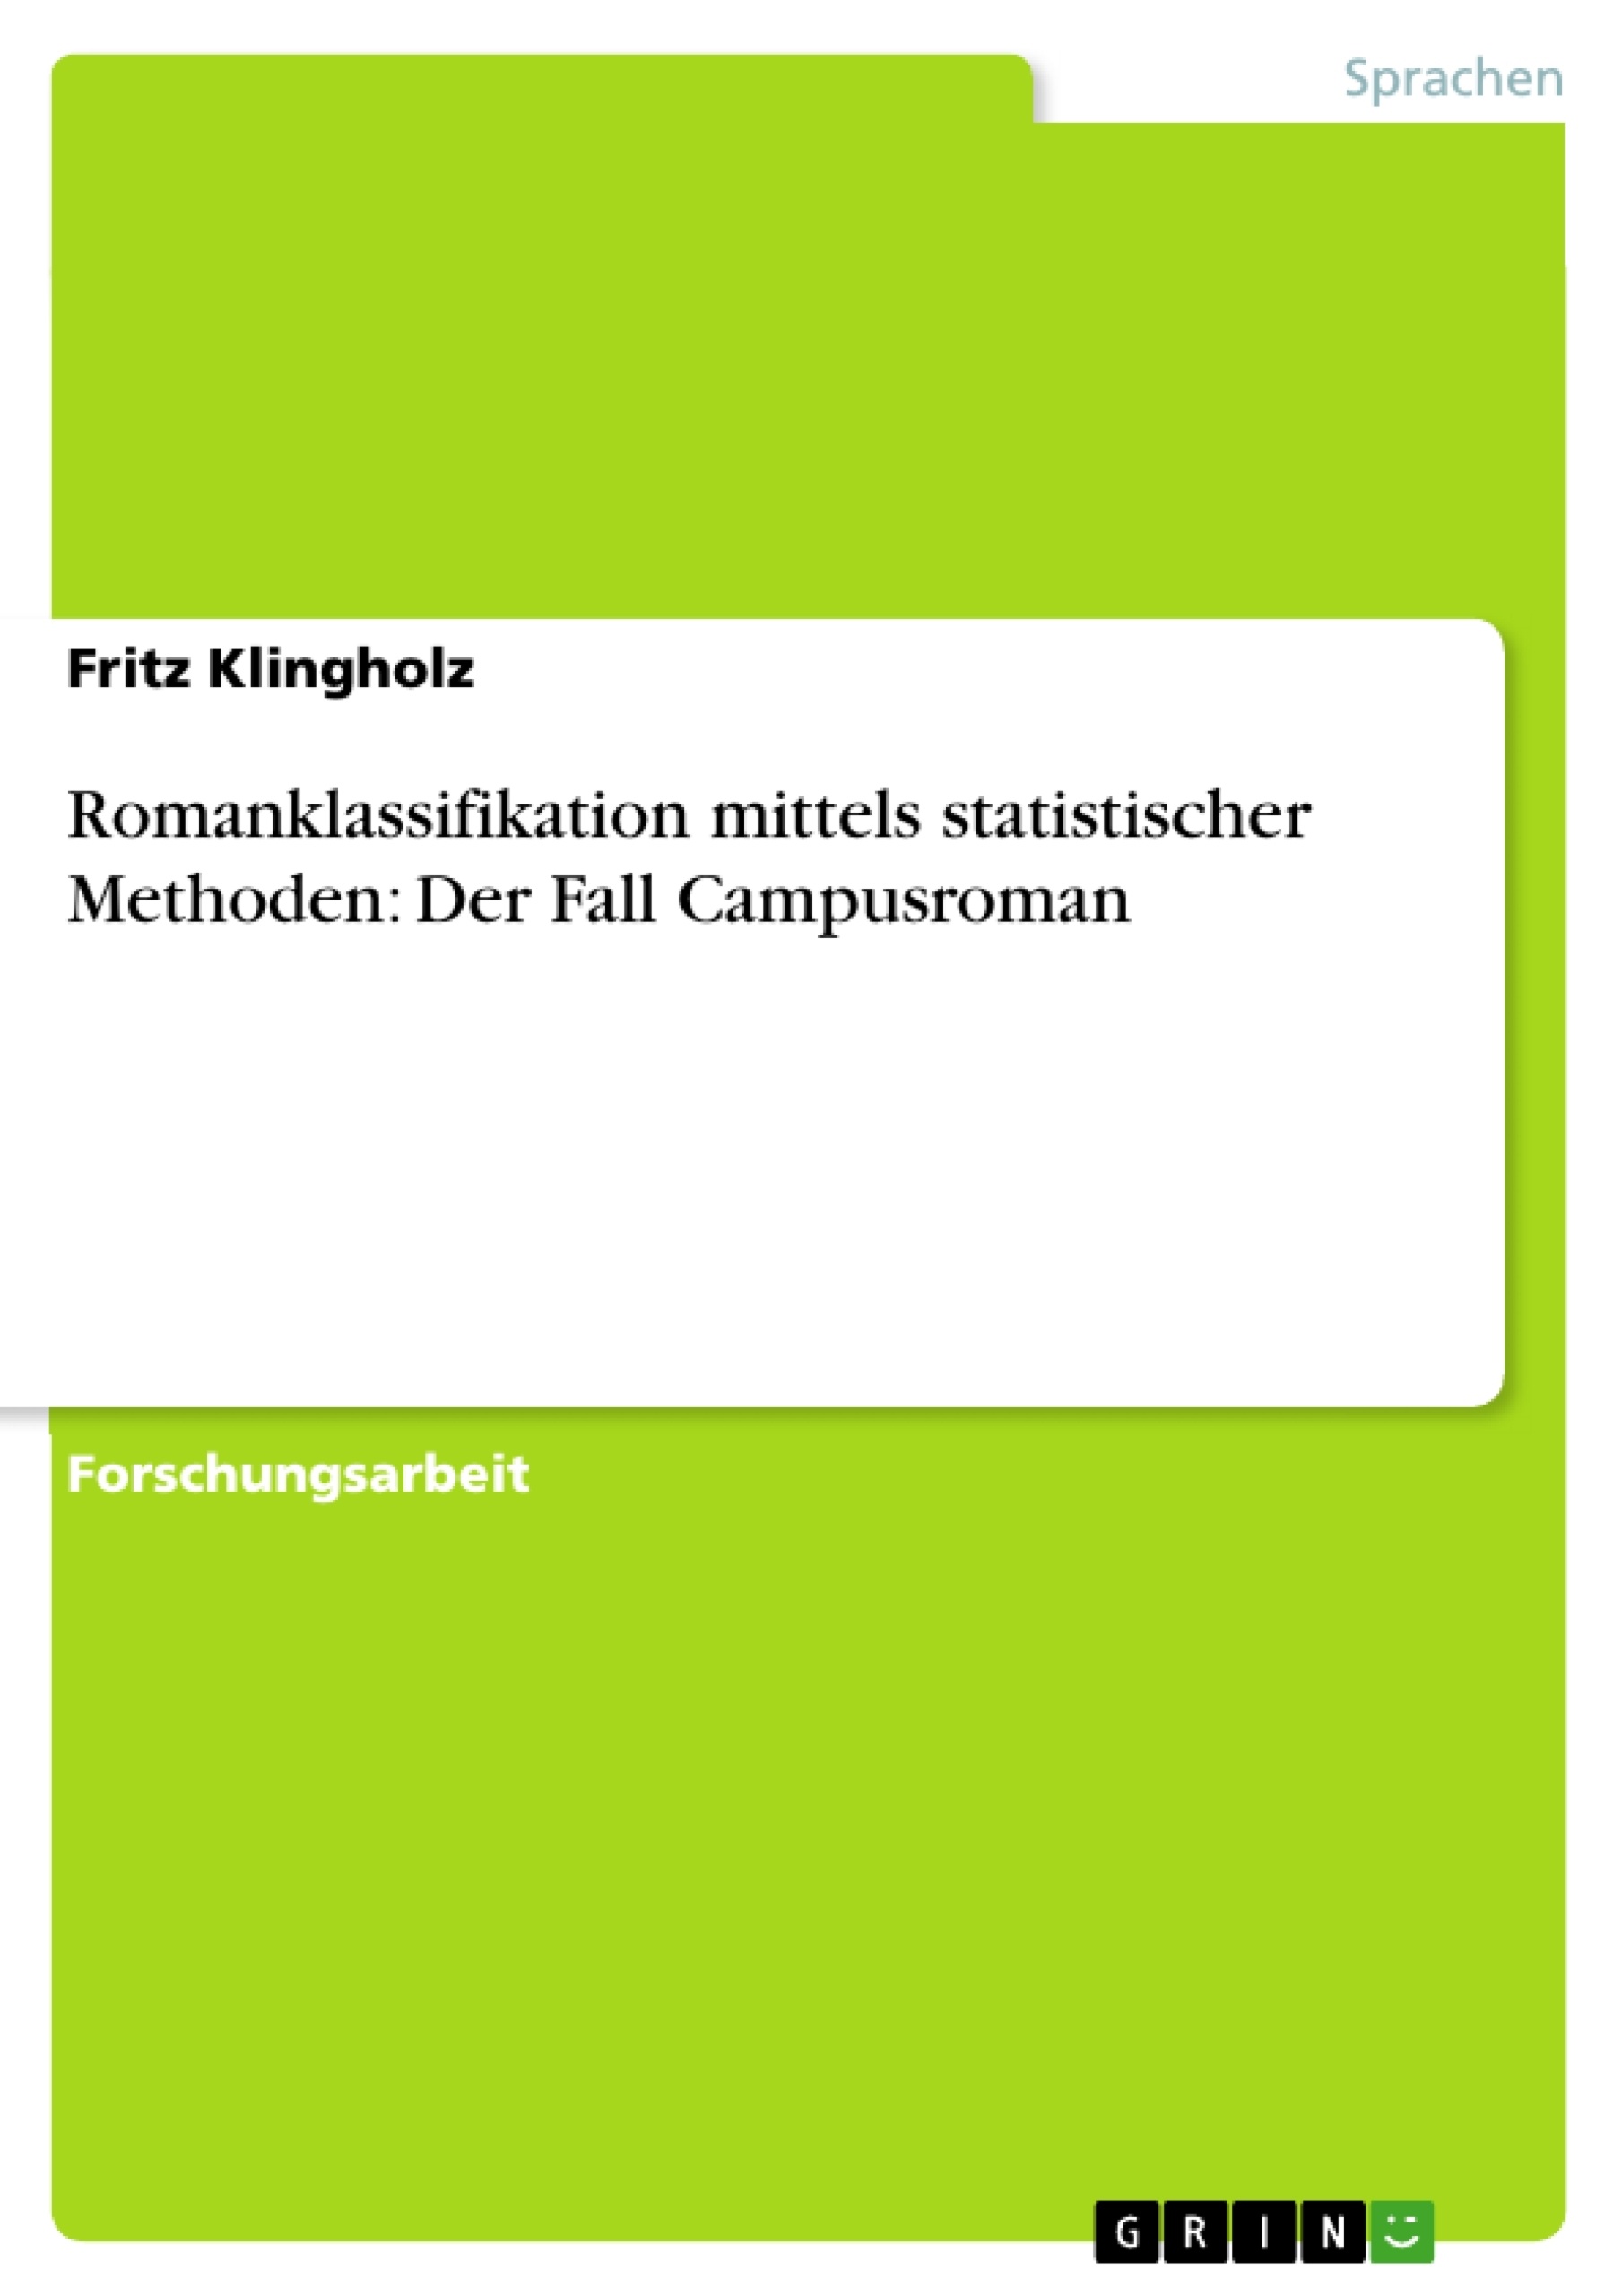 Title: Romanklassifikation mittels statistischer Methoden: Der Fall Campusroman